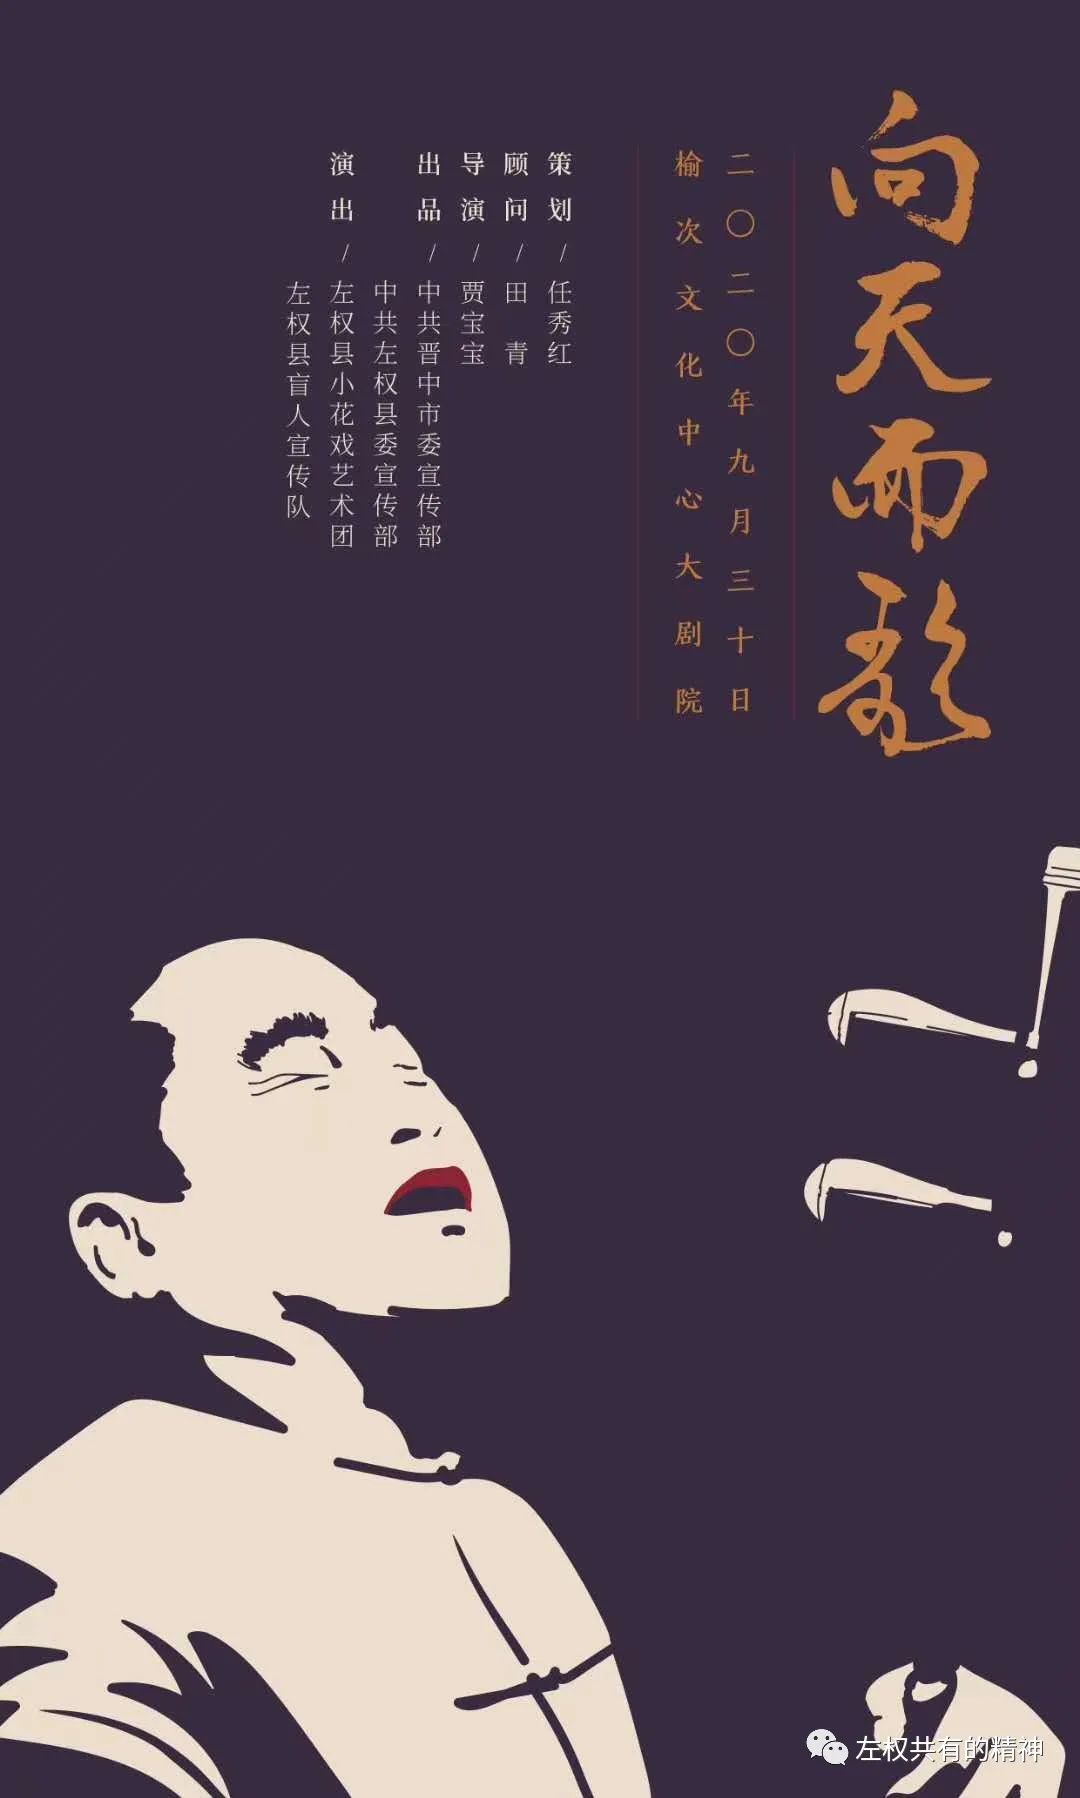 《向天而歌》导演贾宝宝发布首款剧目海报